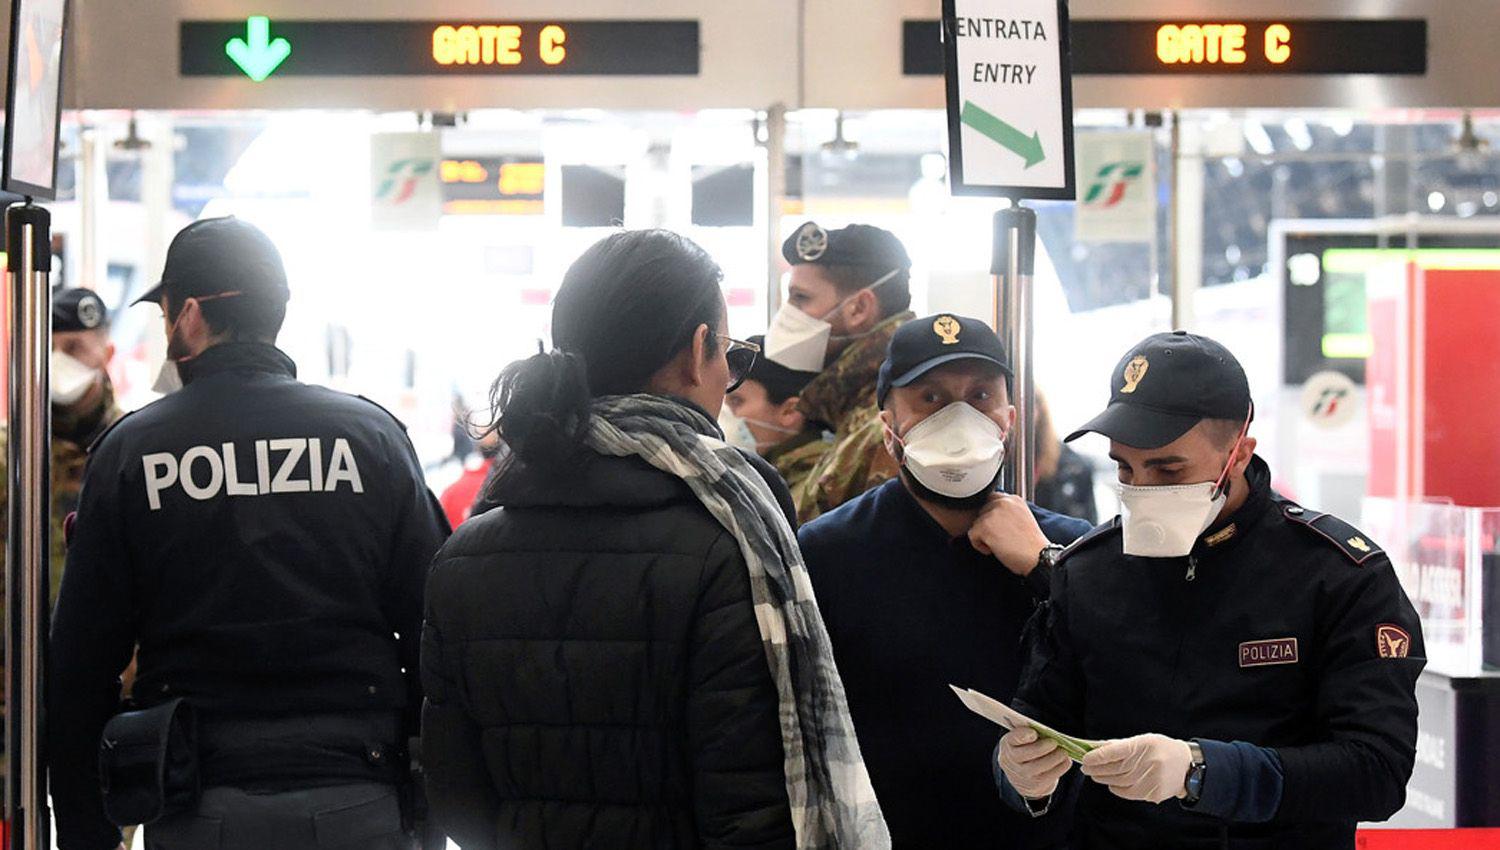 Las fuerzas de seguridad de Italia fueron desplegadas para controlar a todas las personas especialmente a los viajeros